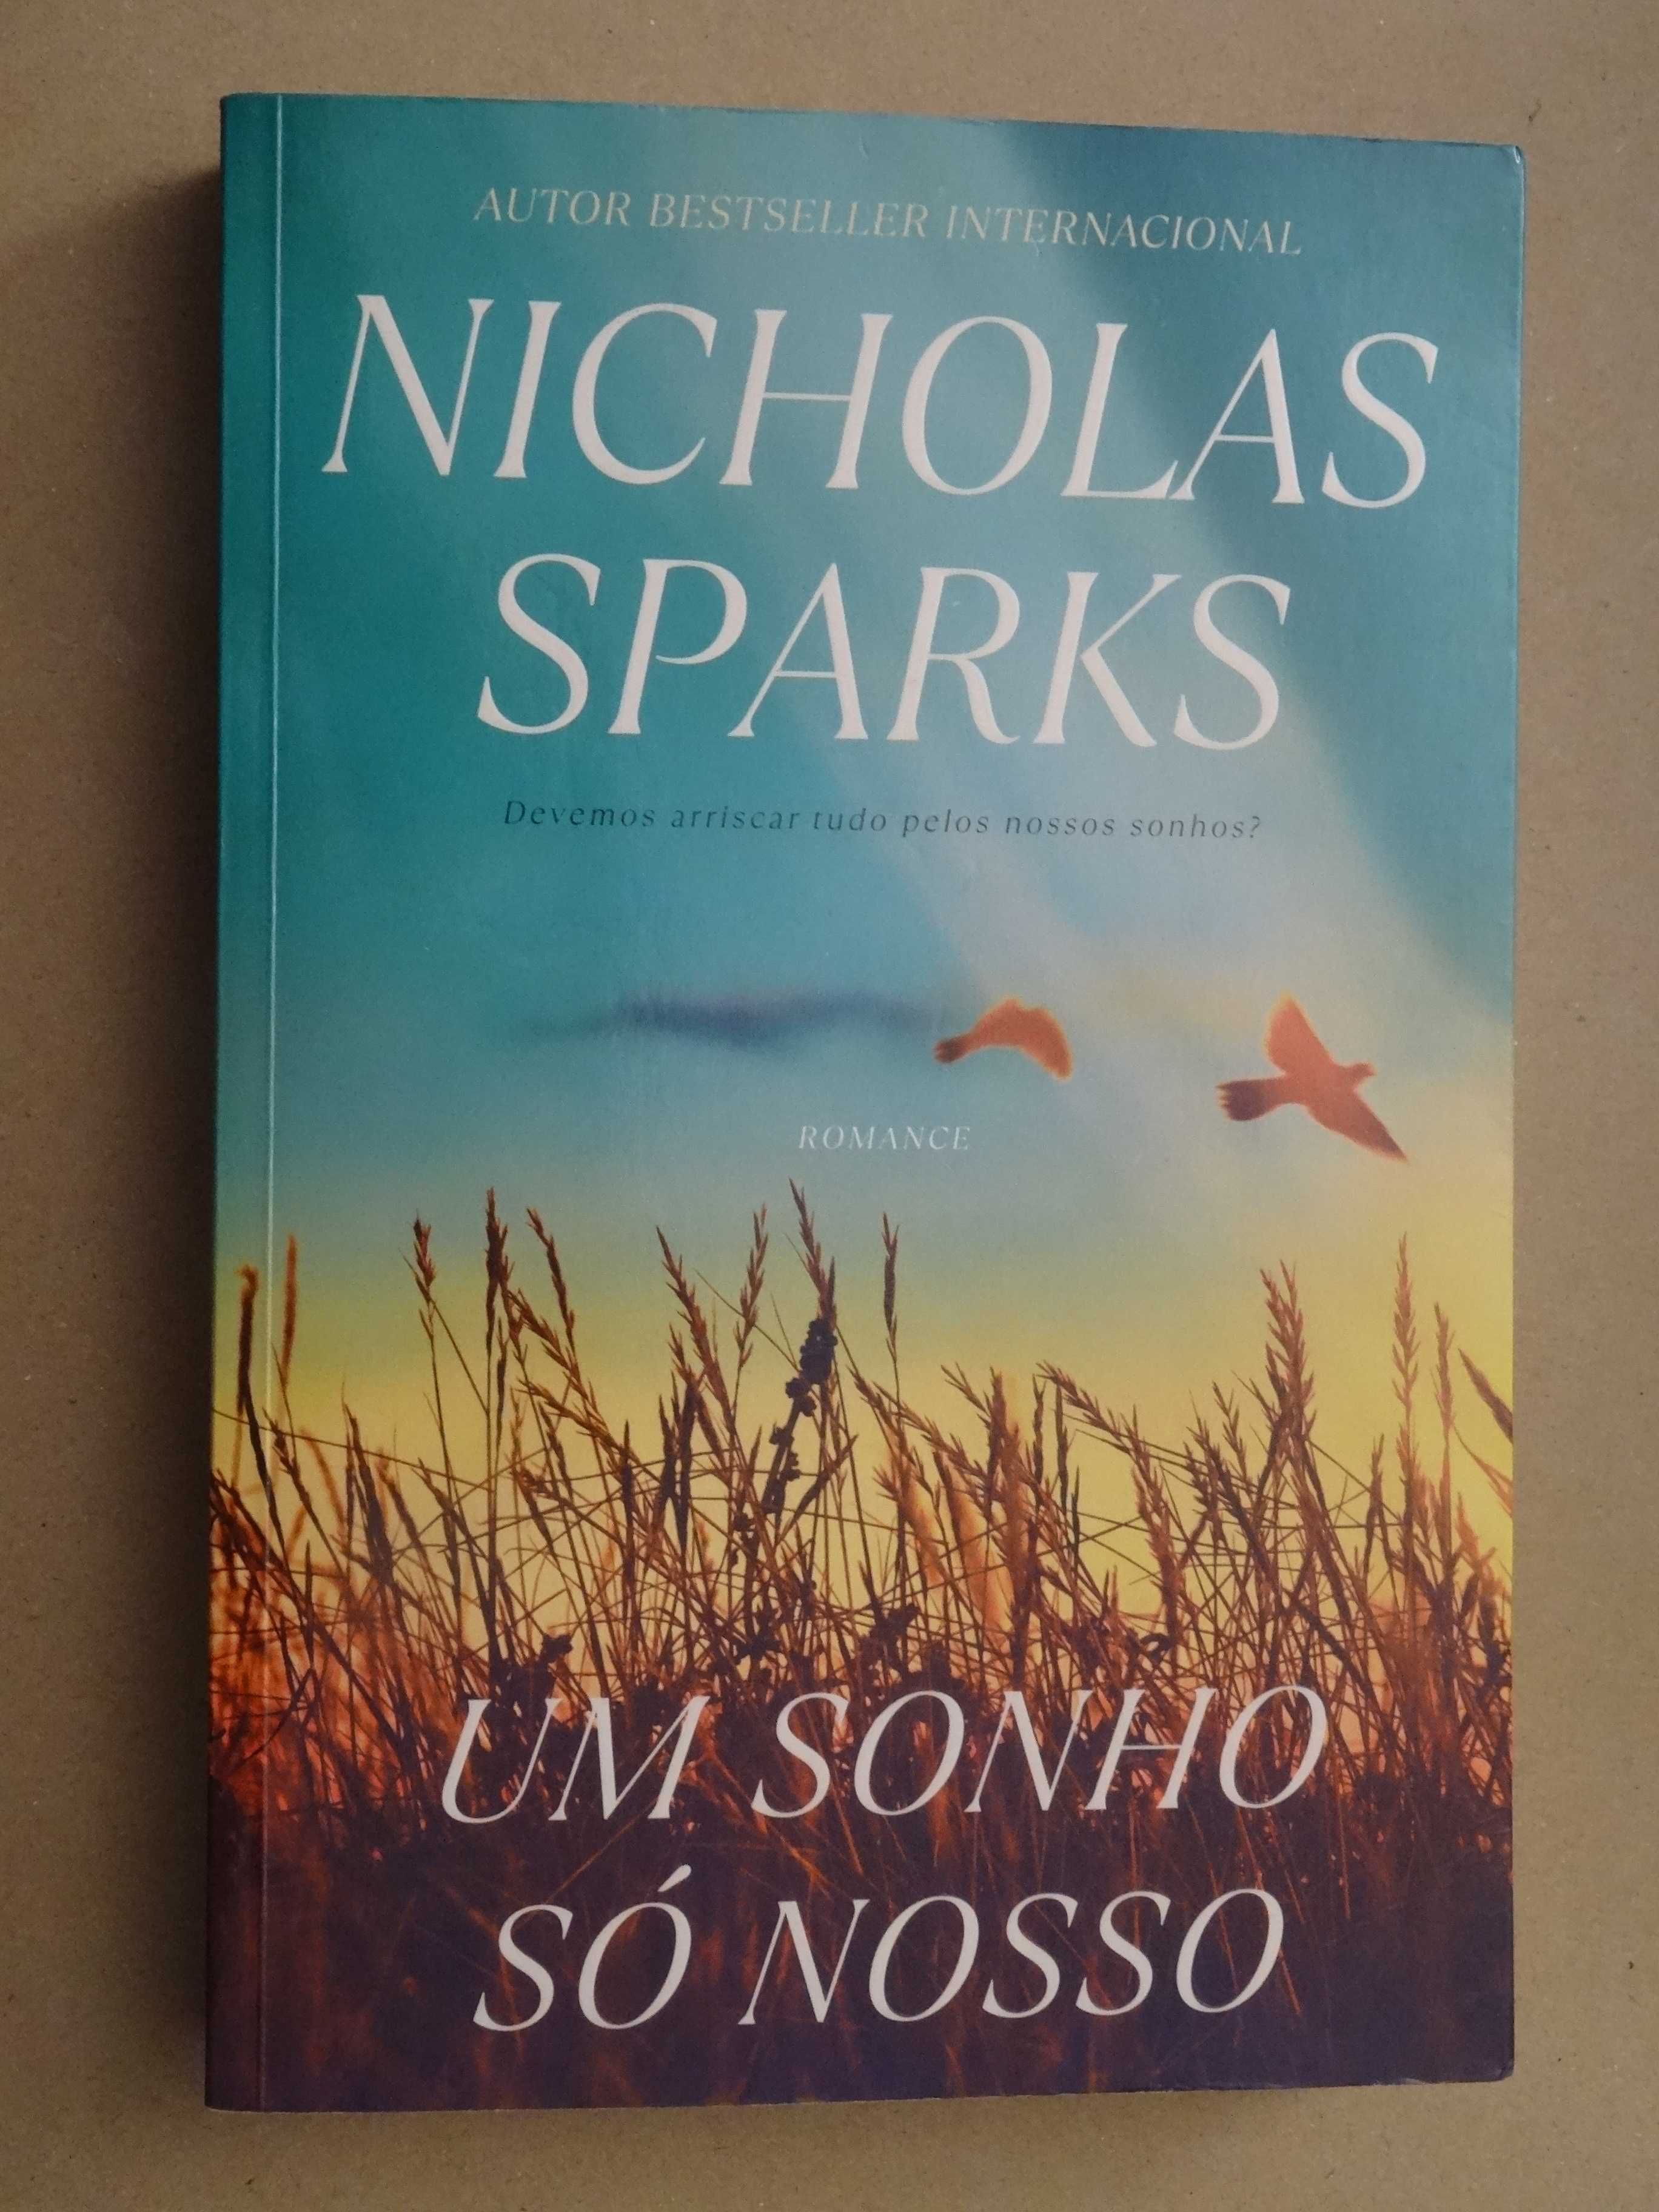 Nicholas Sparks - Vários títulos